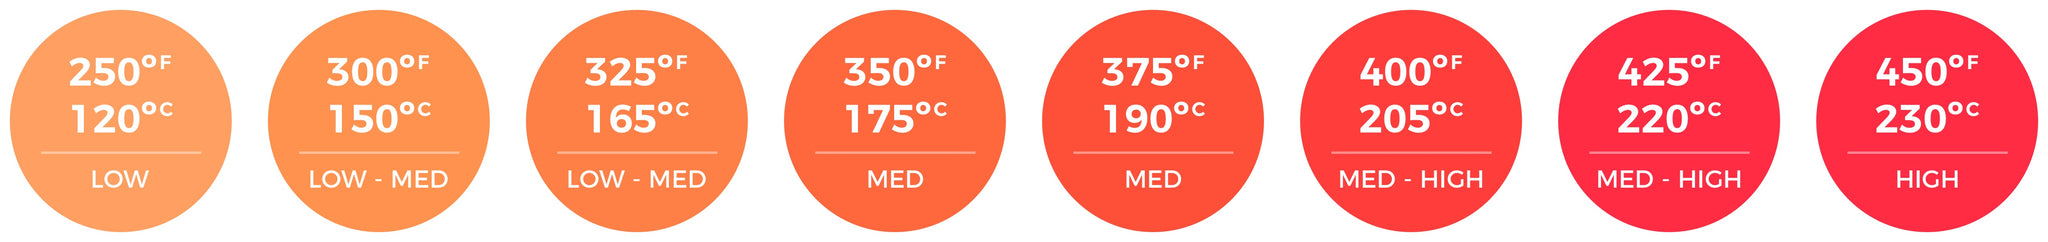 temperature range